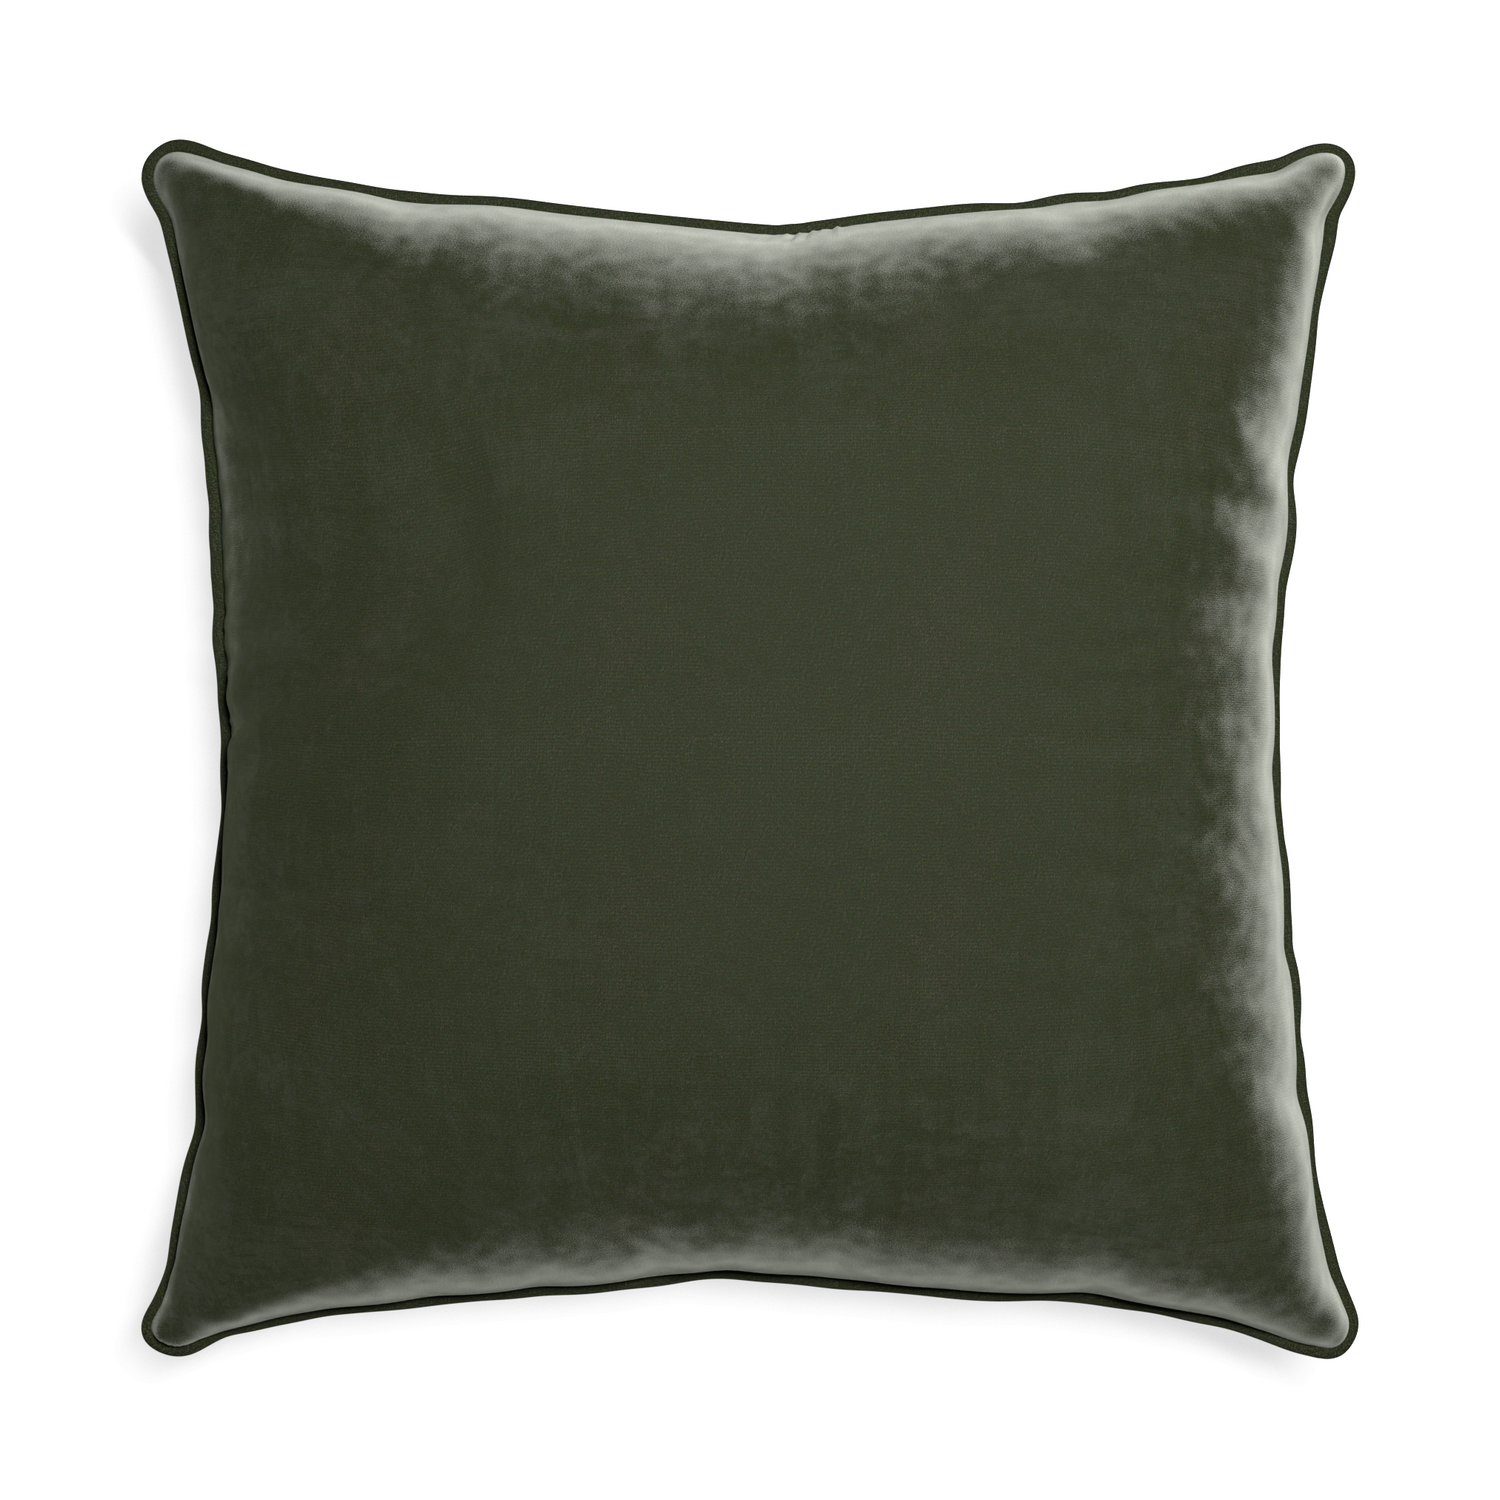 Euro-sham fern velvet custom pillow with f piping on white background